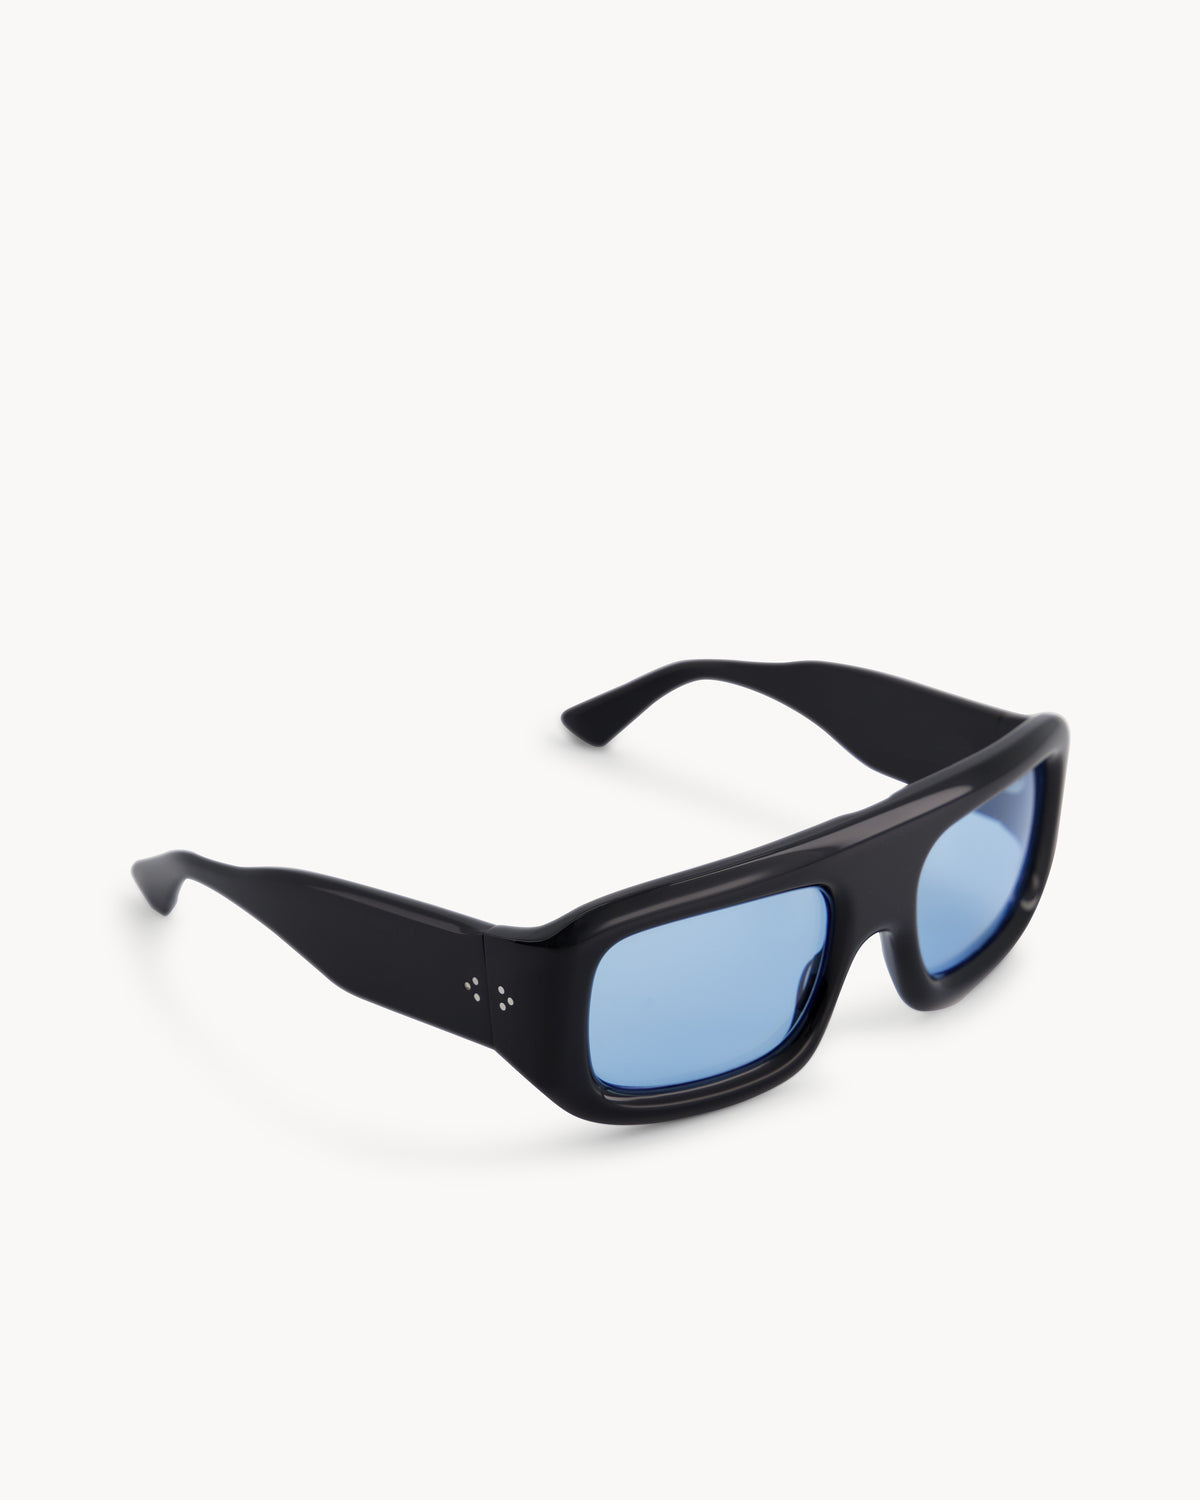 Port Tanger Mauretania Sunglasses in Black Acetate and Rif Blue Lenses 2